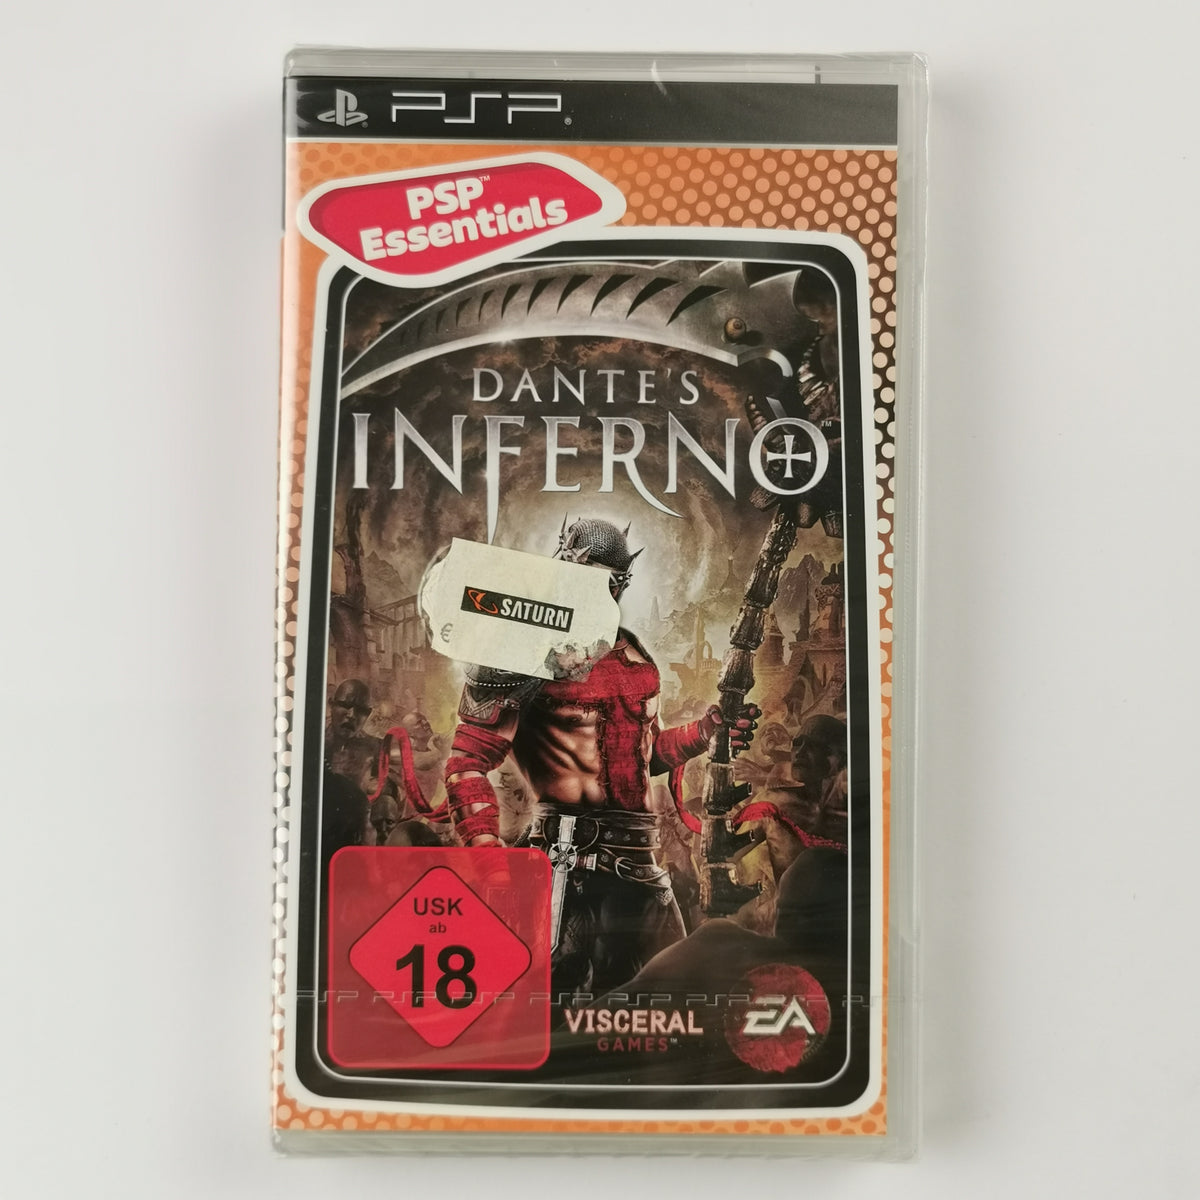 Dantes Inferno [Essentials] [PSP]